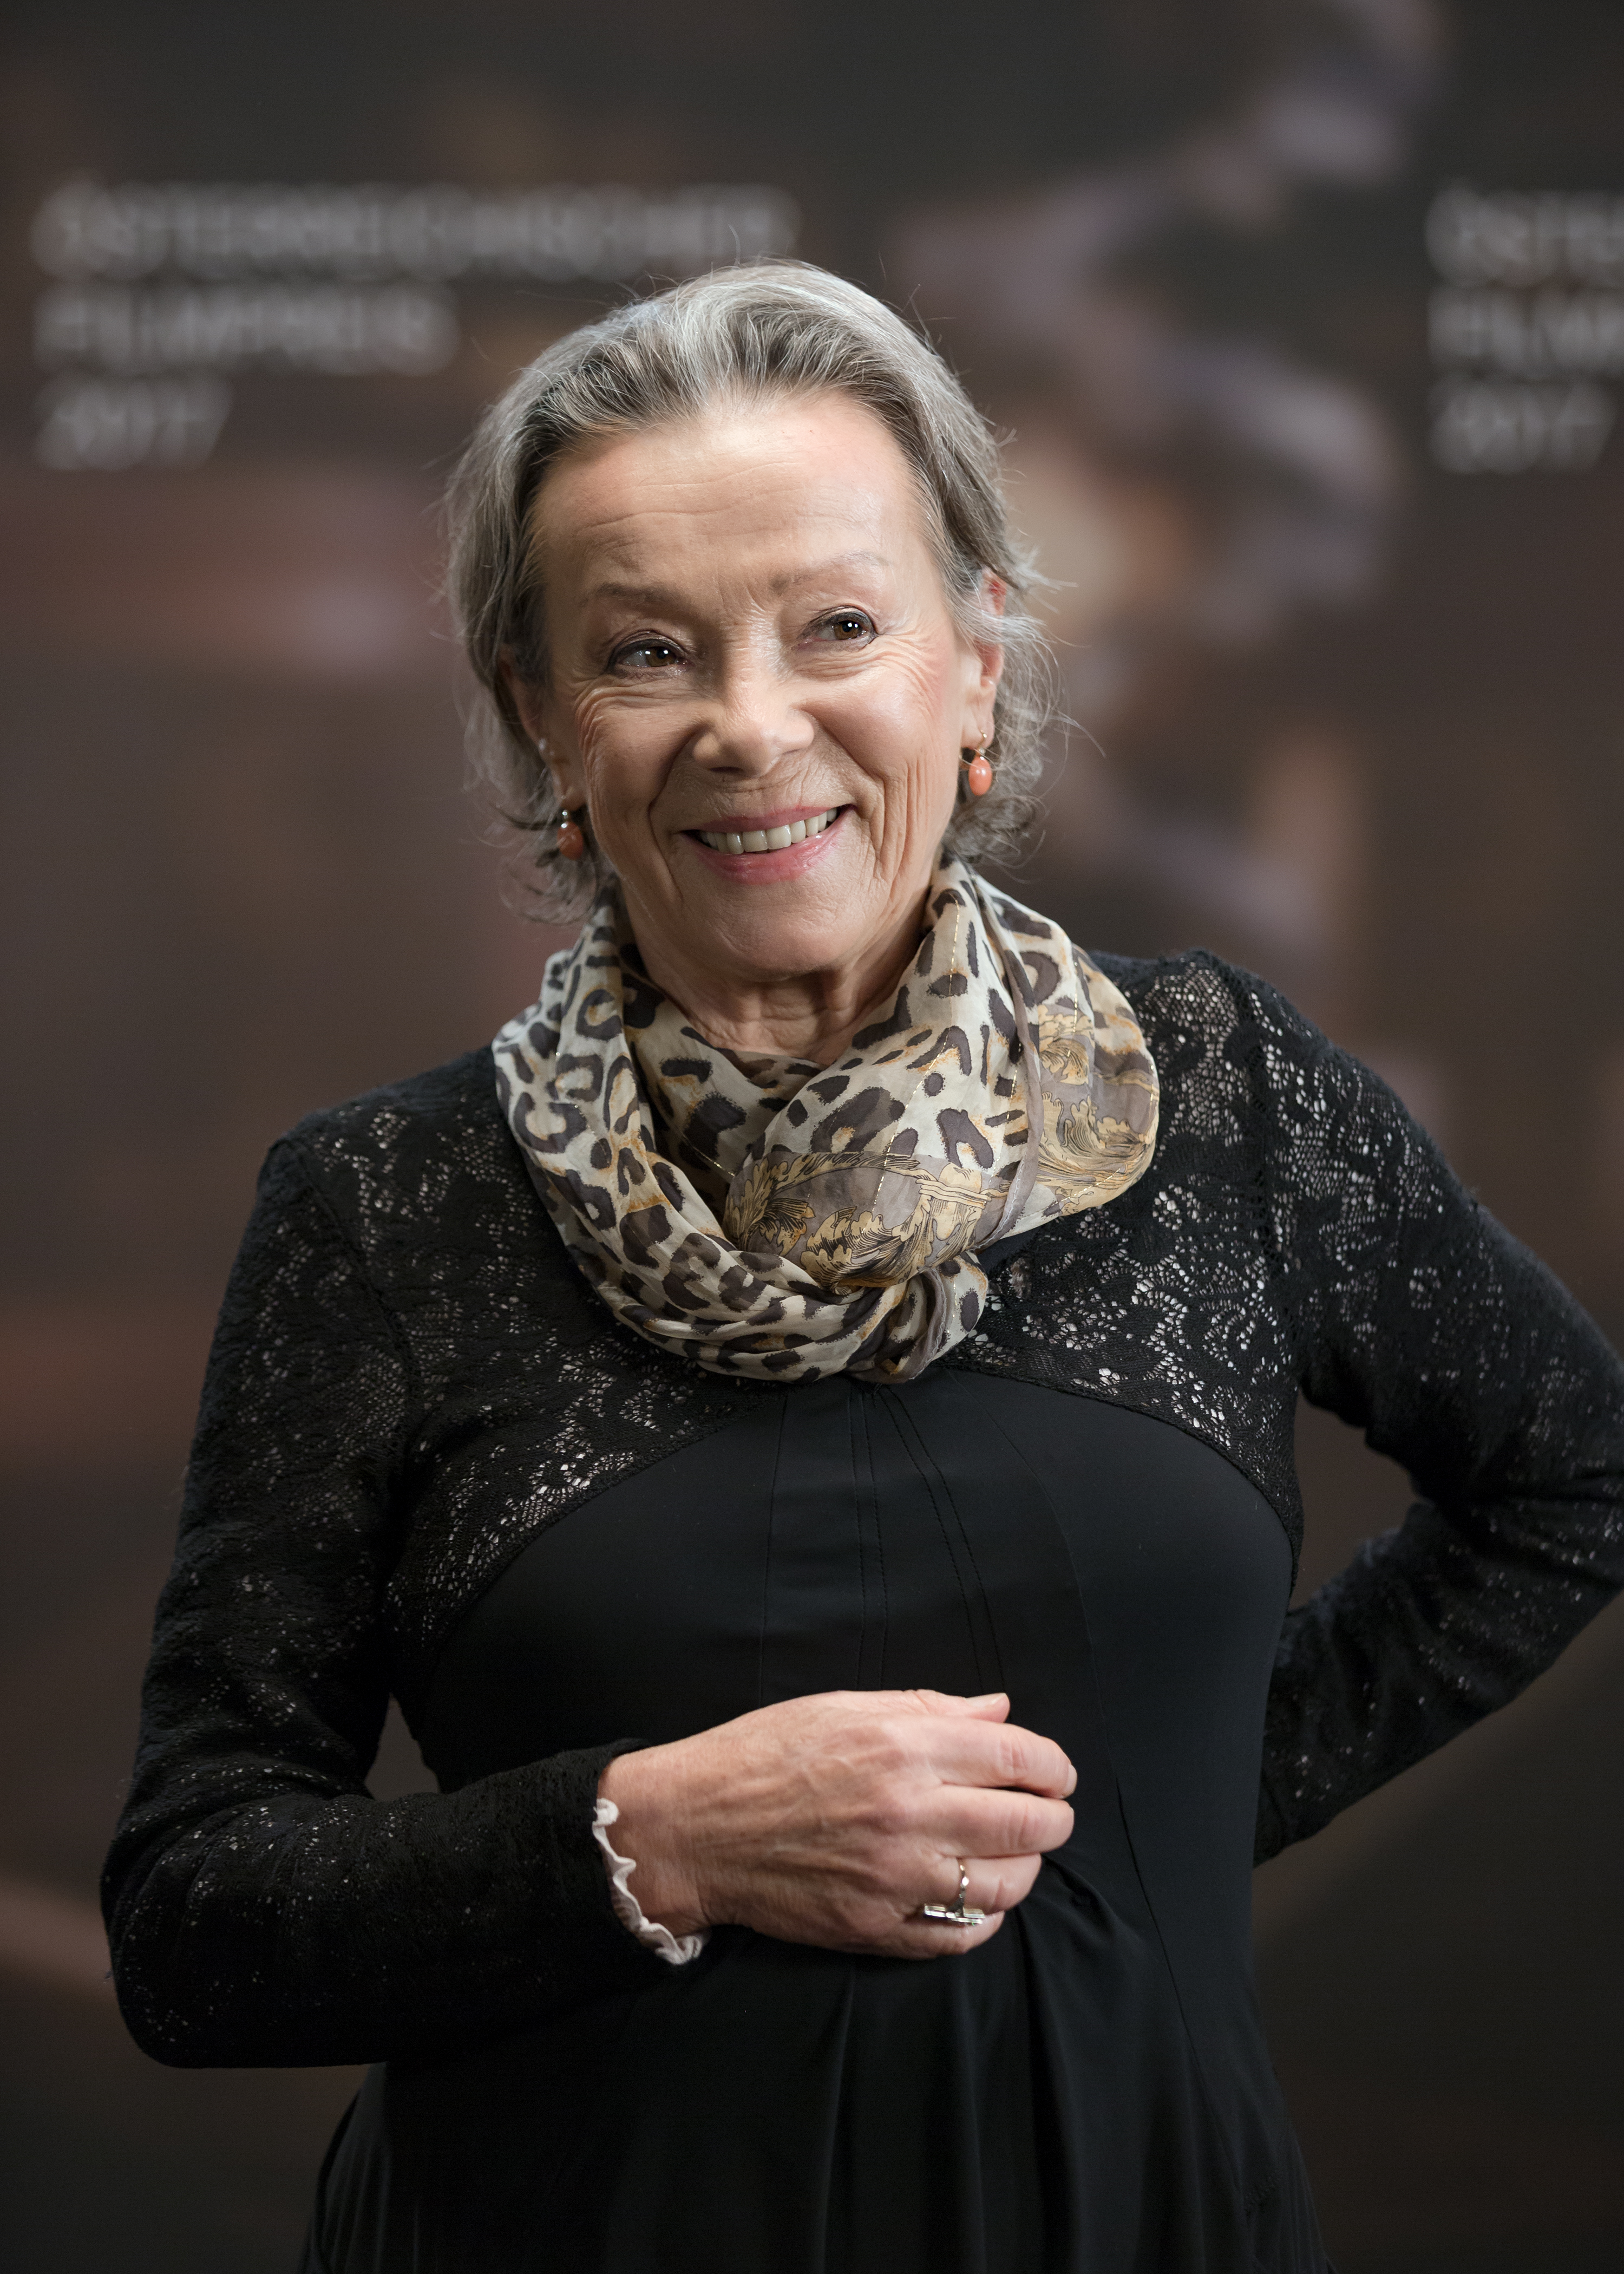 Österreichischer Filmpreis 2017 photo call Krista Stadler 1